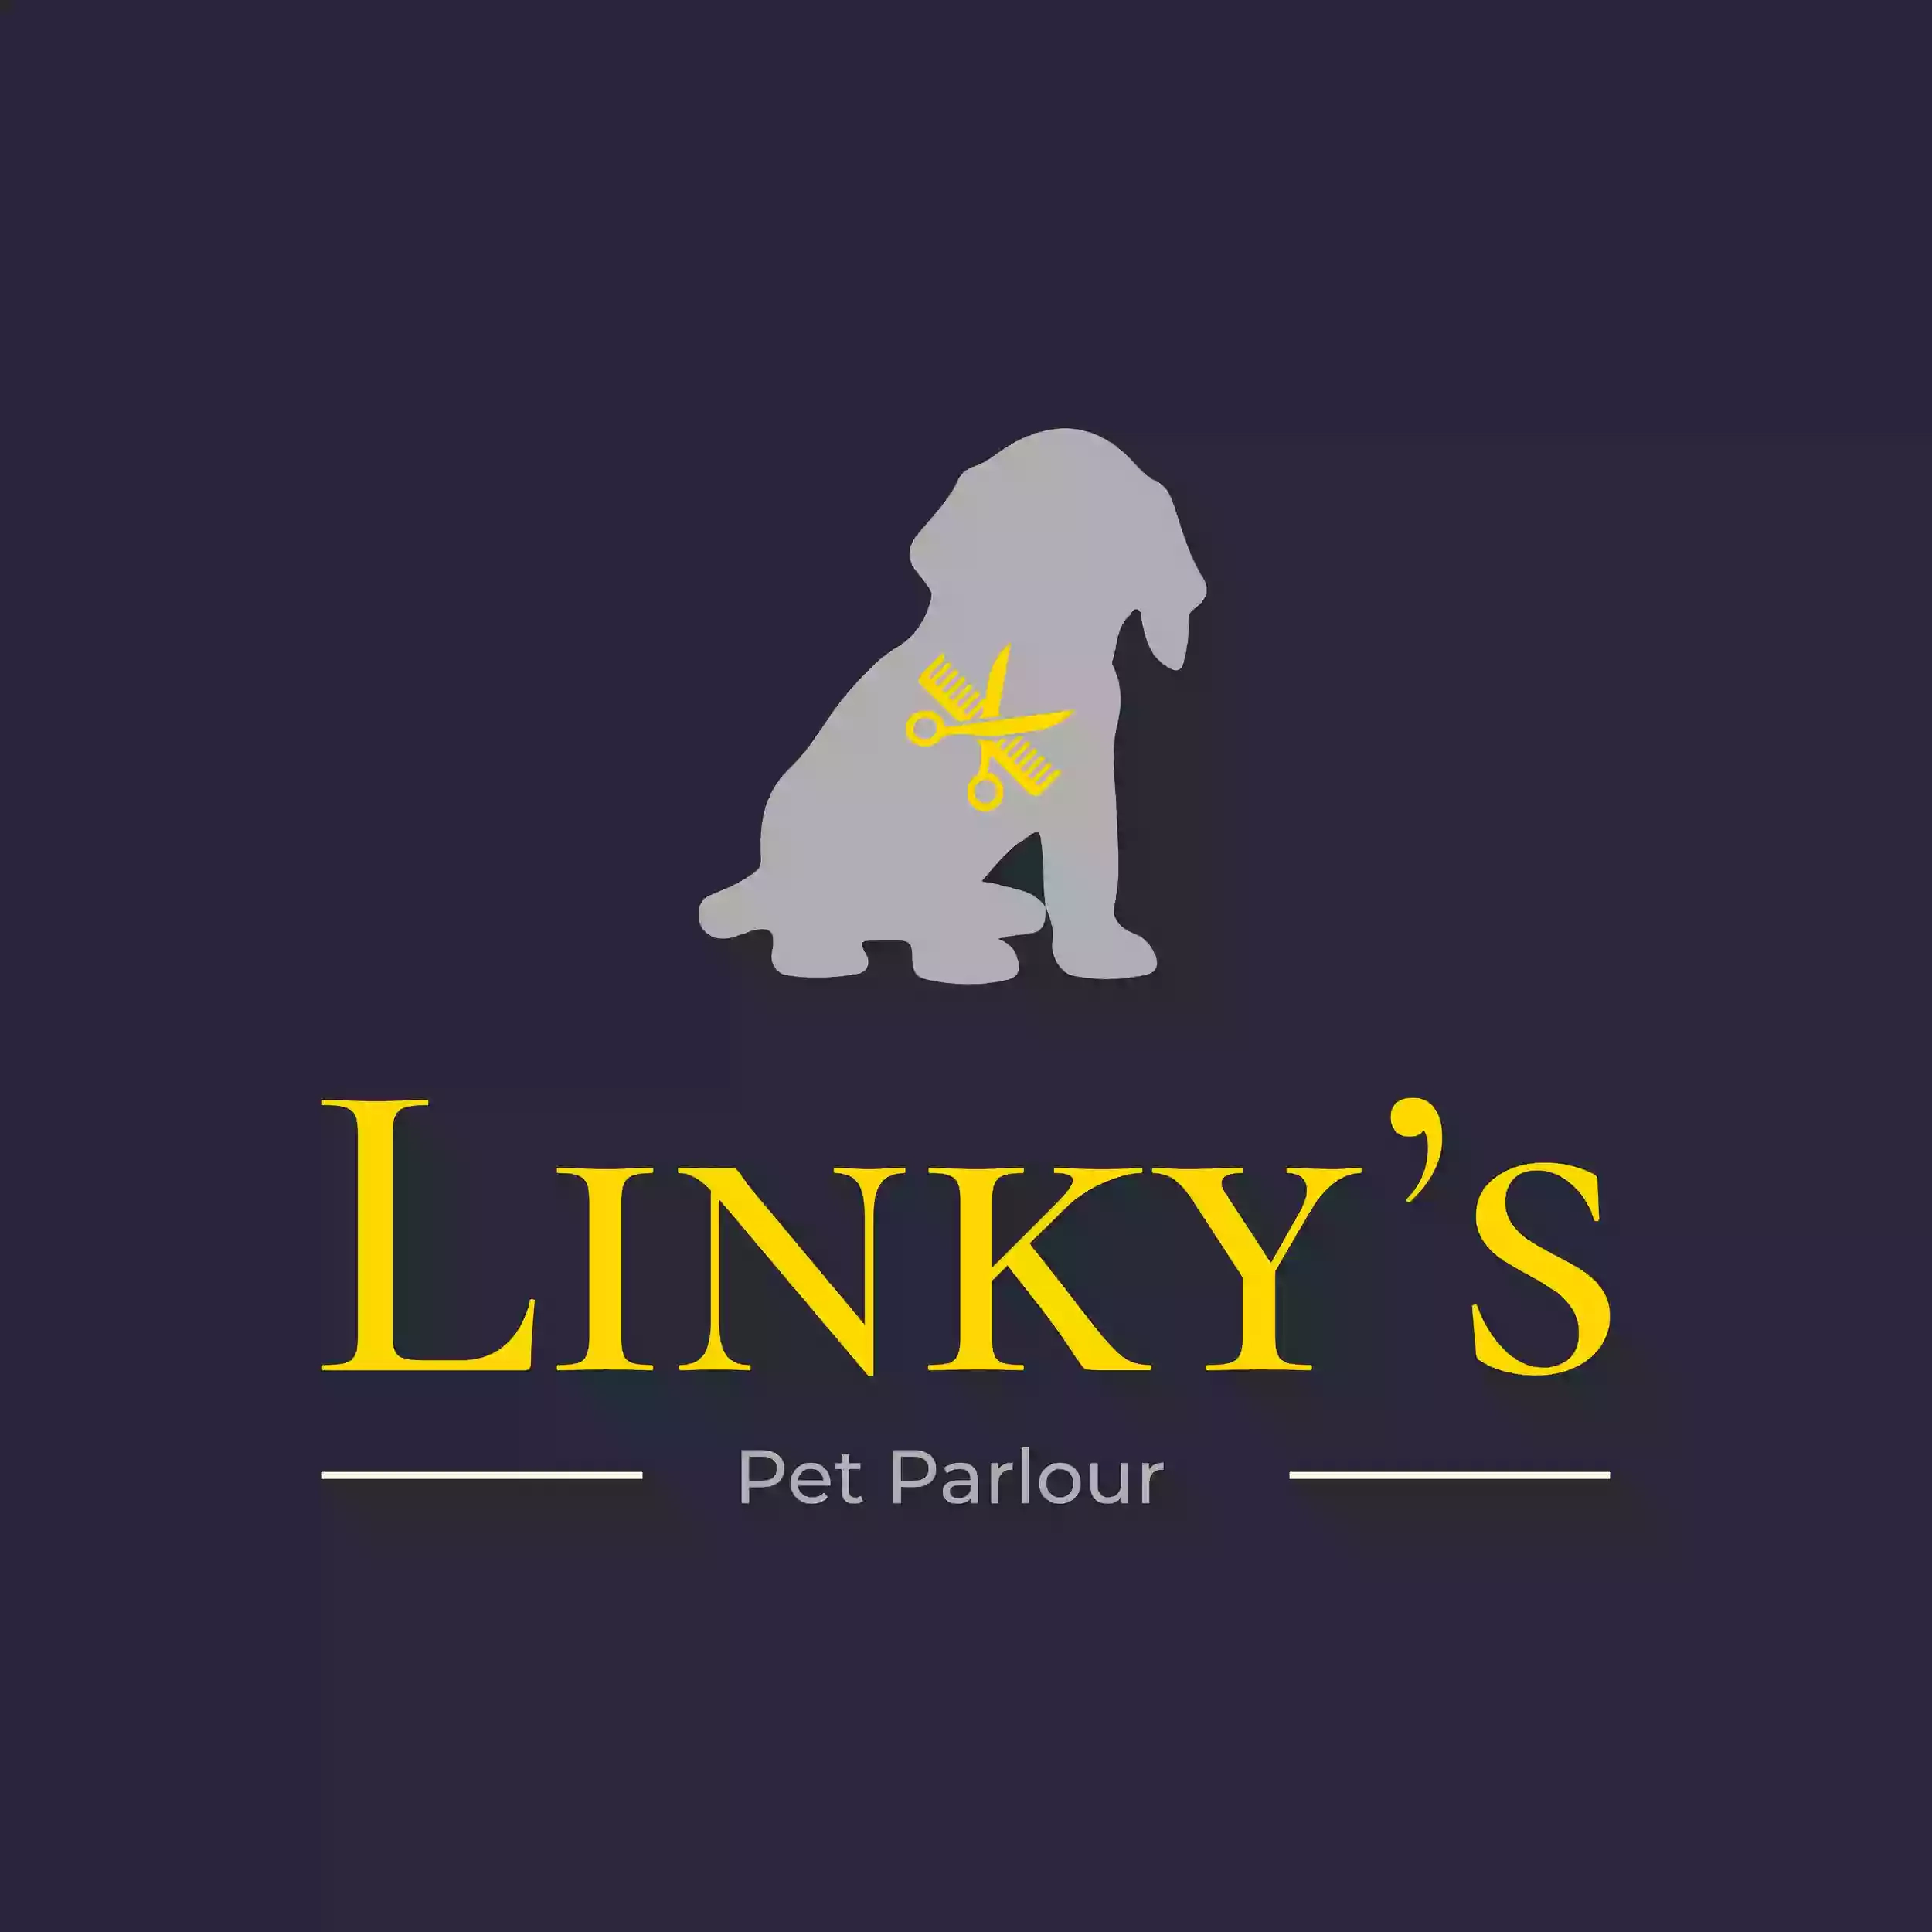 Linky's Pet Parlour